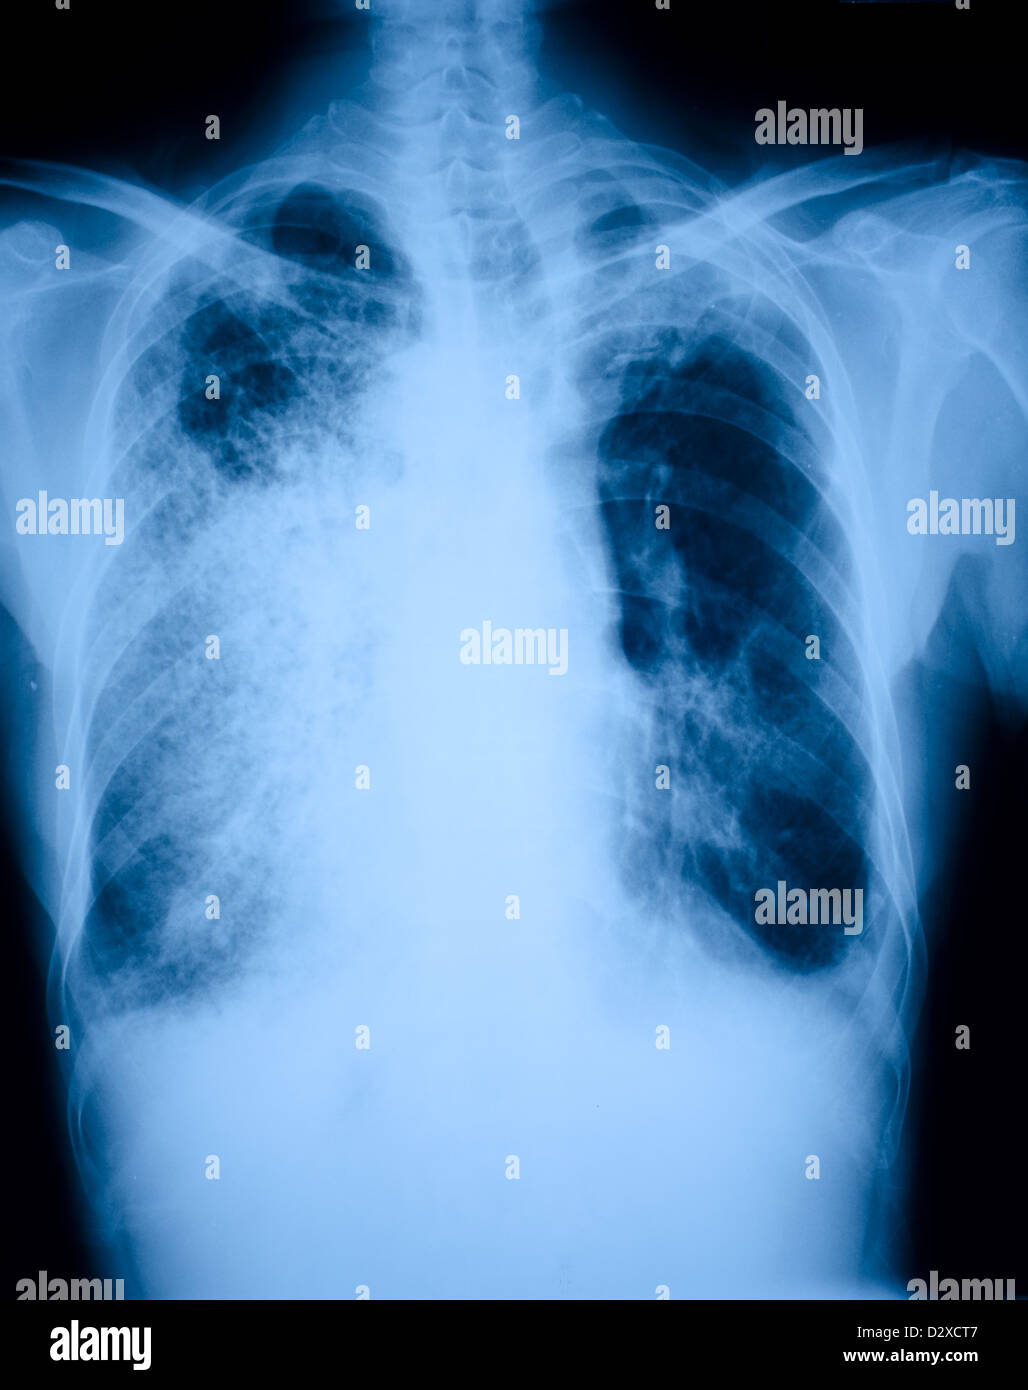 Pneumonia patients x-ray film Stock Photo